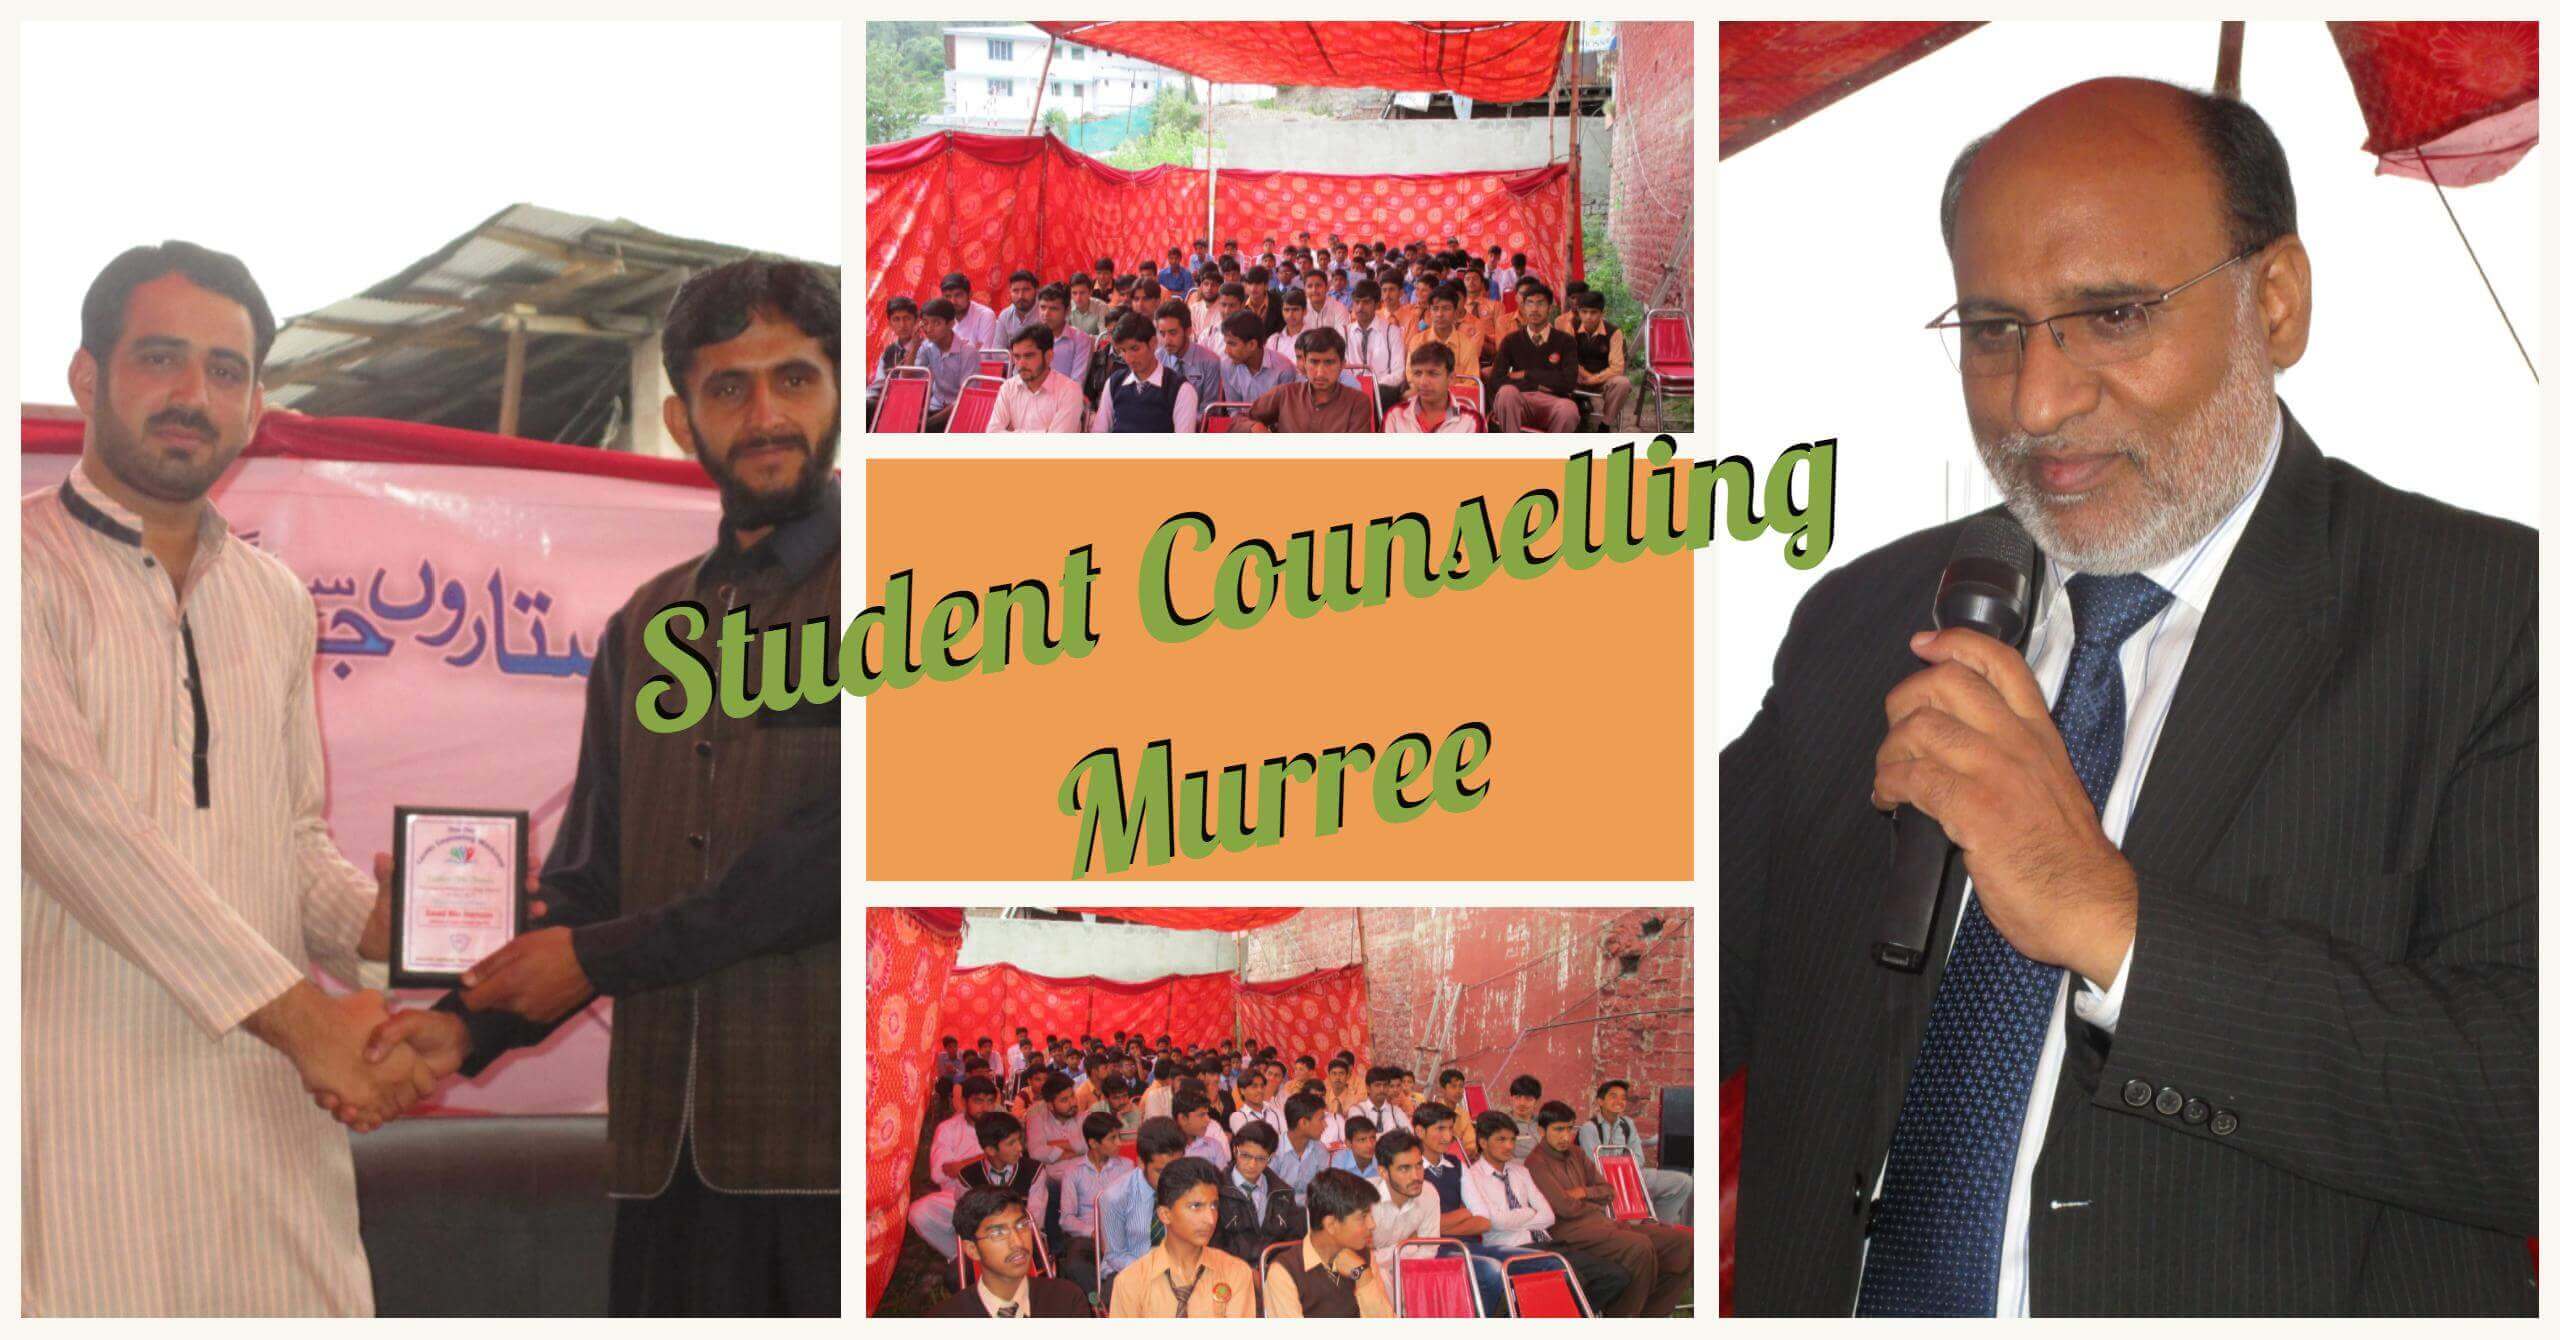 Career planning seminar murree